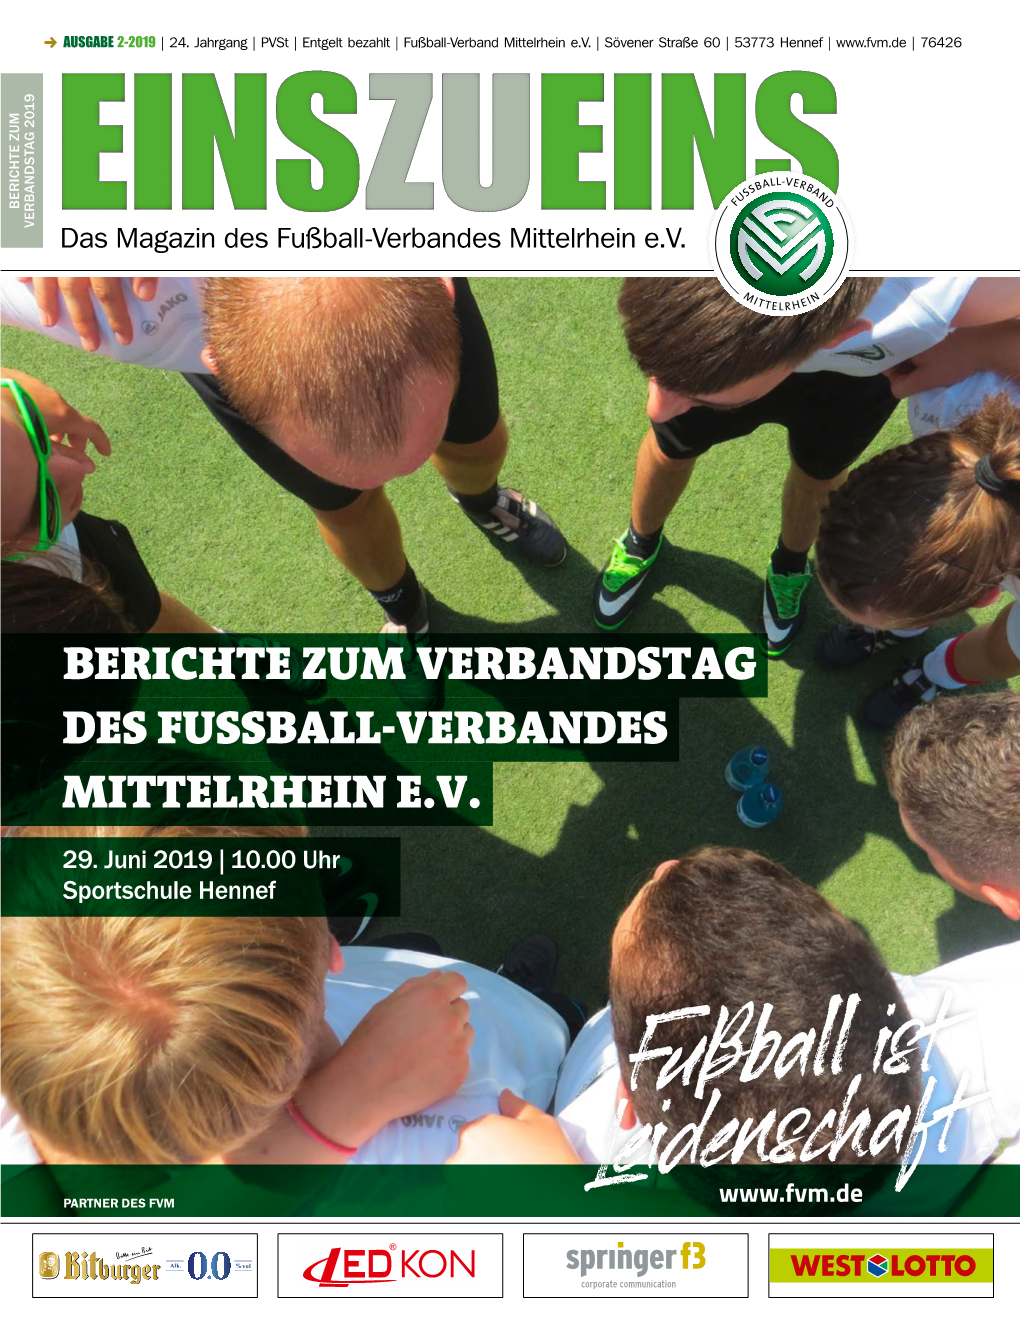 Berichte Zum Verbandstag Des Fussball-Verbandes